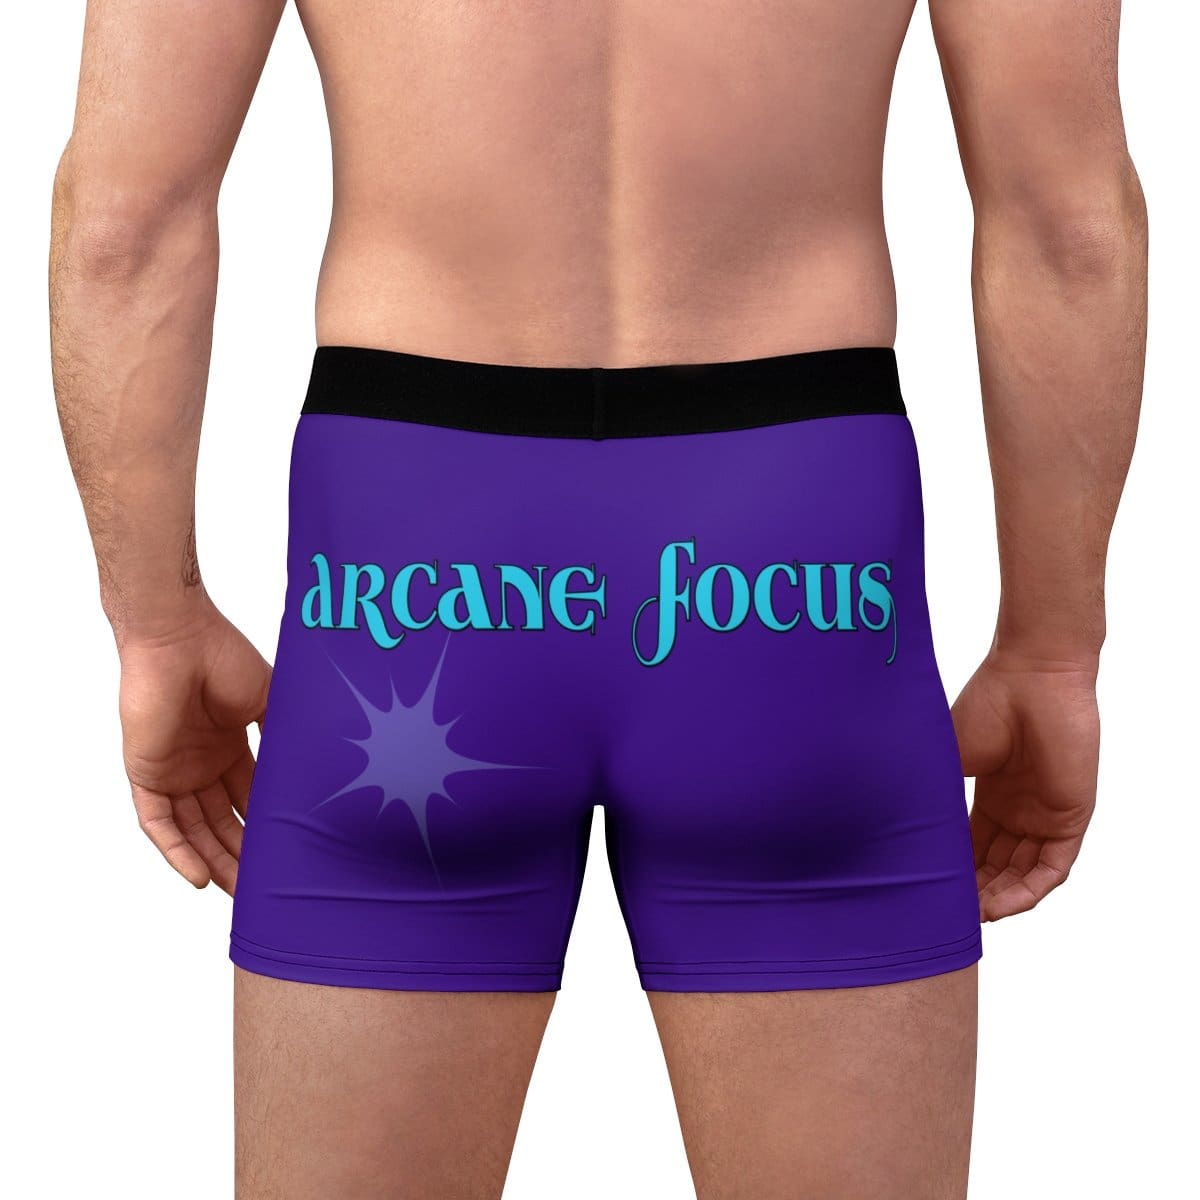 Arcane Focus - Purple Boxer Briefs - L / Black Seams - All Over Prints